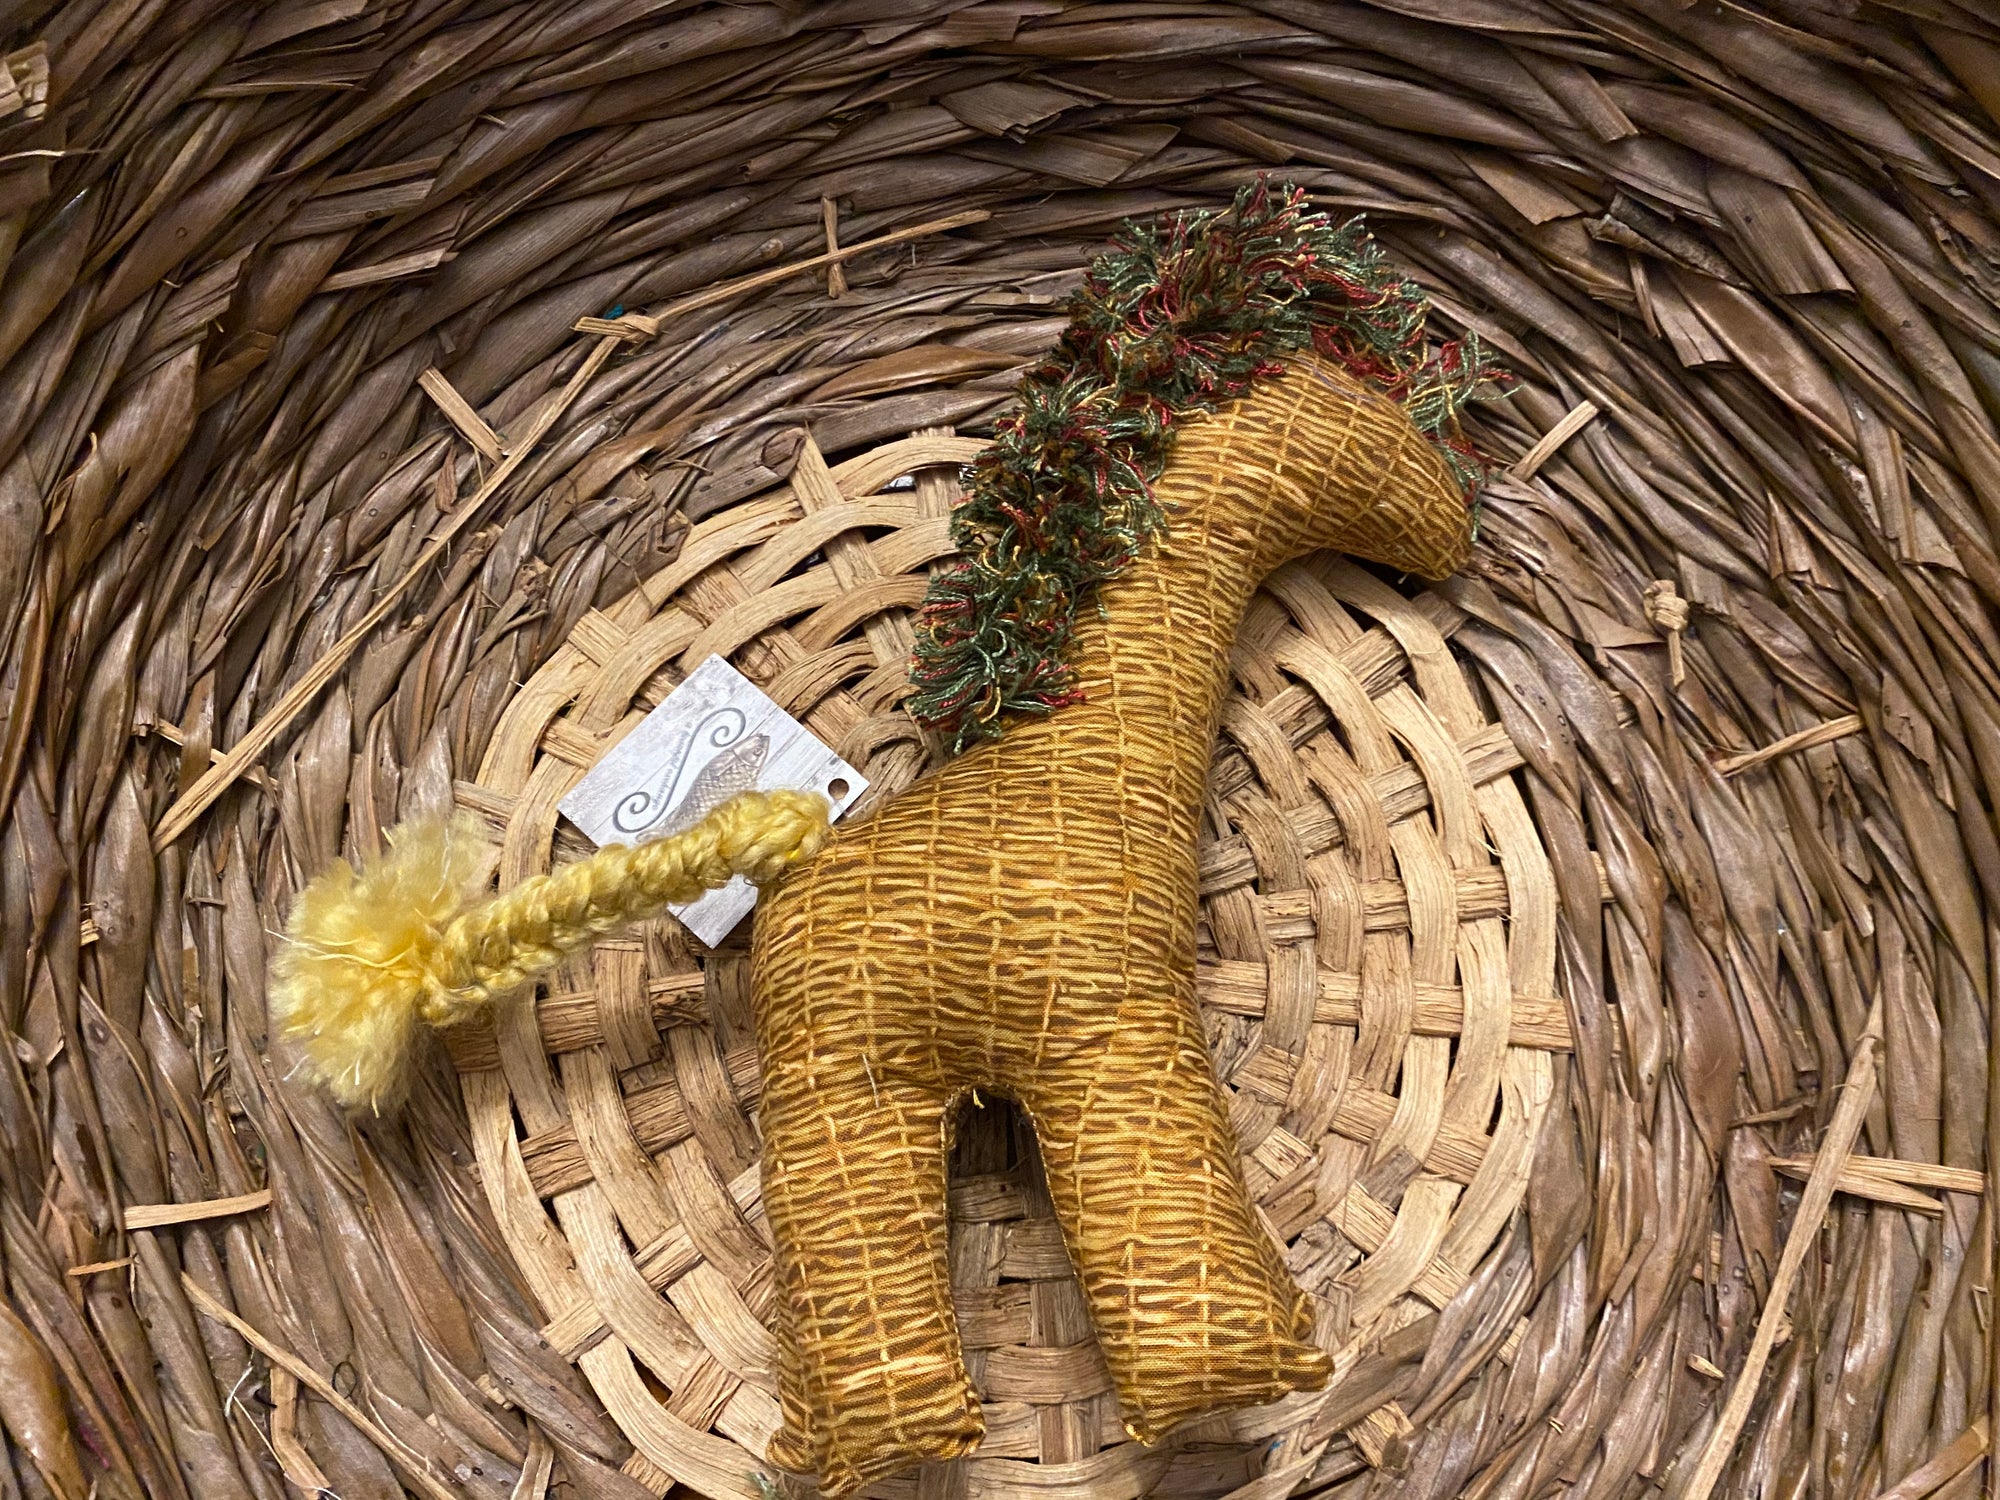 Giraffe gold basket weave